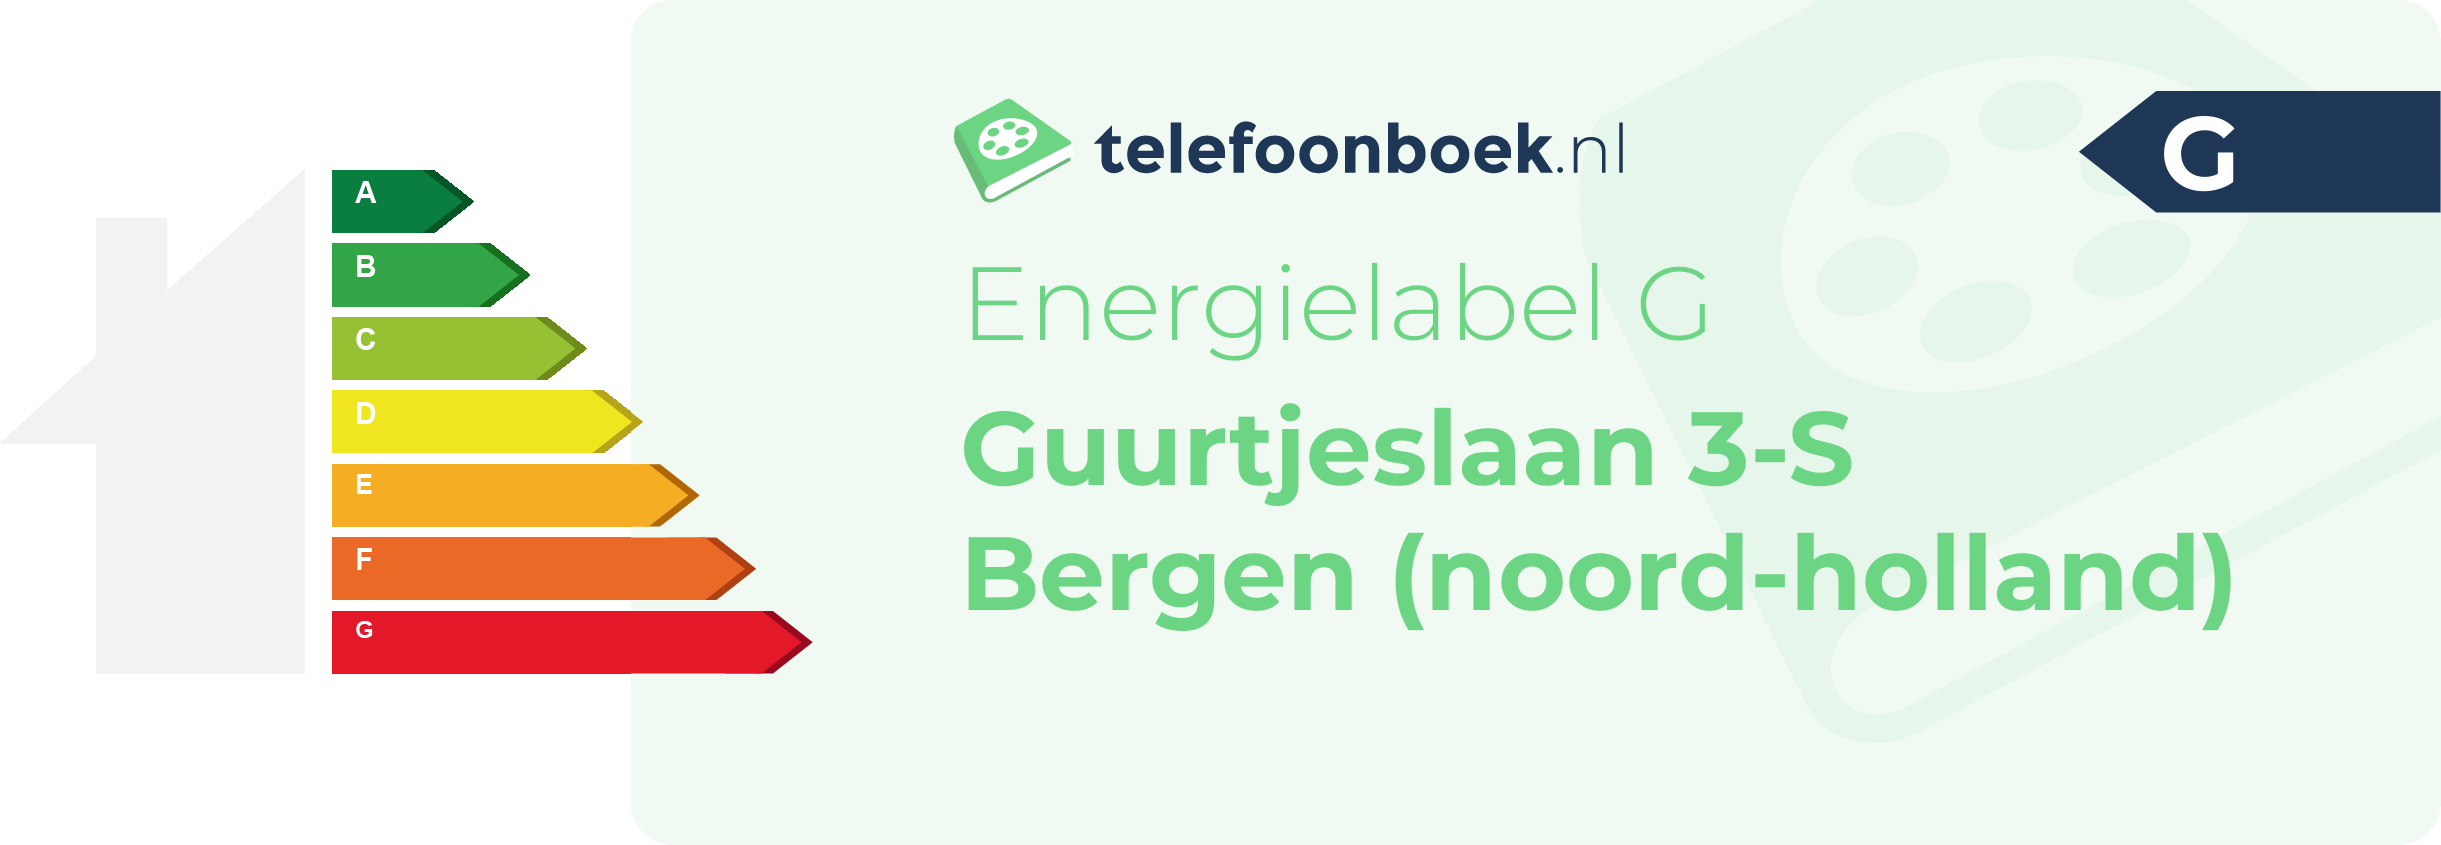 Energielabel Guurtjeslaan 3-S Bergen (Noord-Holland)